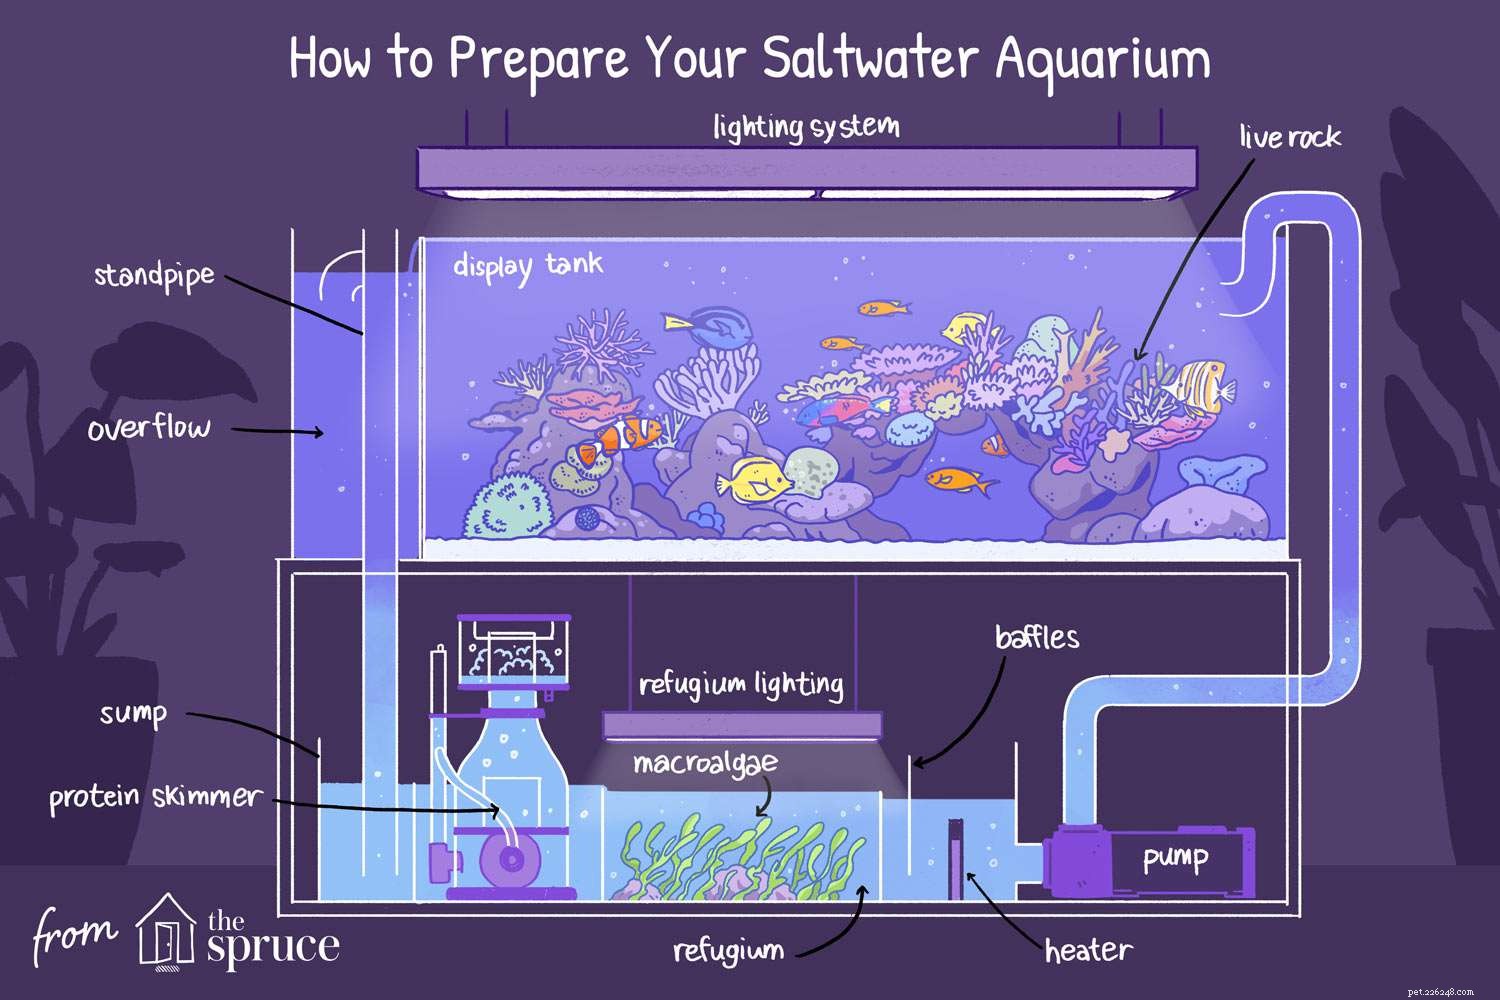 Instructies voor het opzetten van een zoutwateraquarium